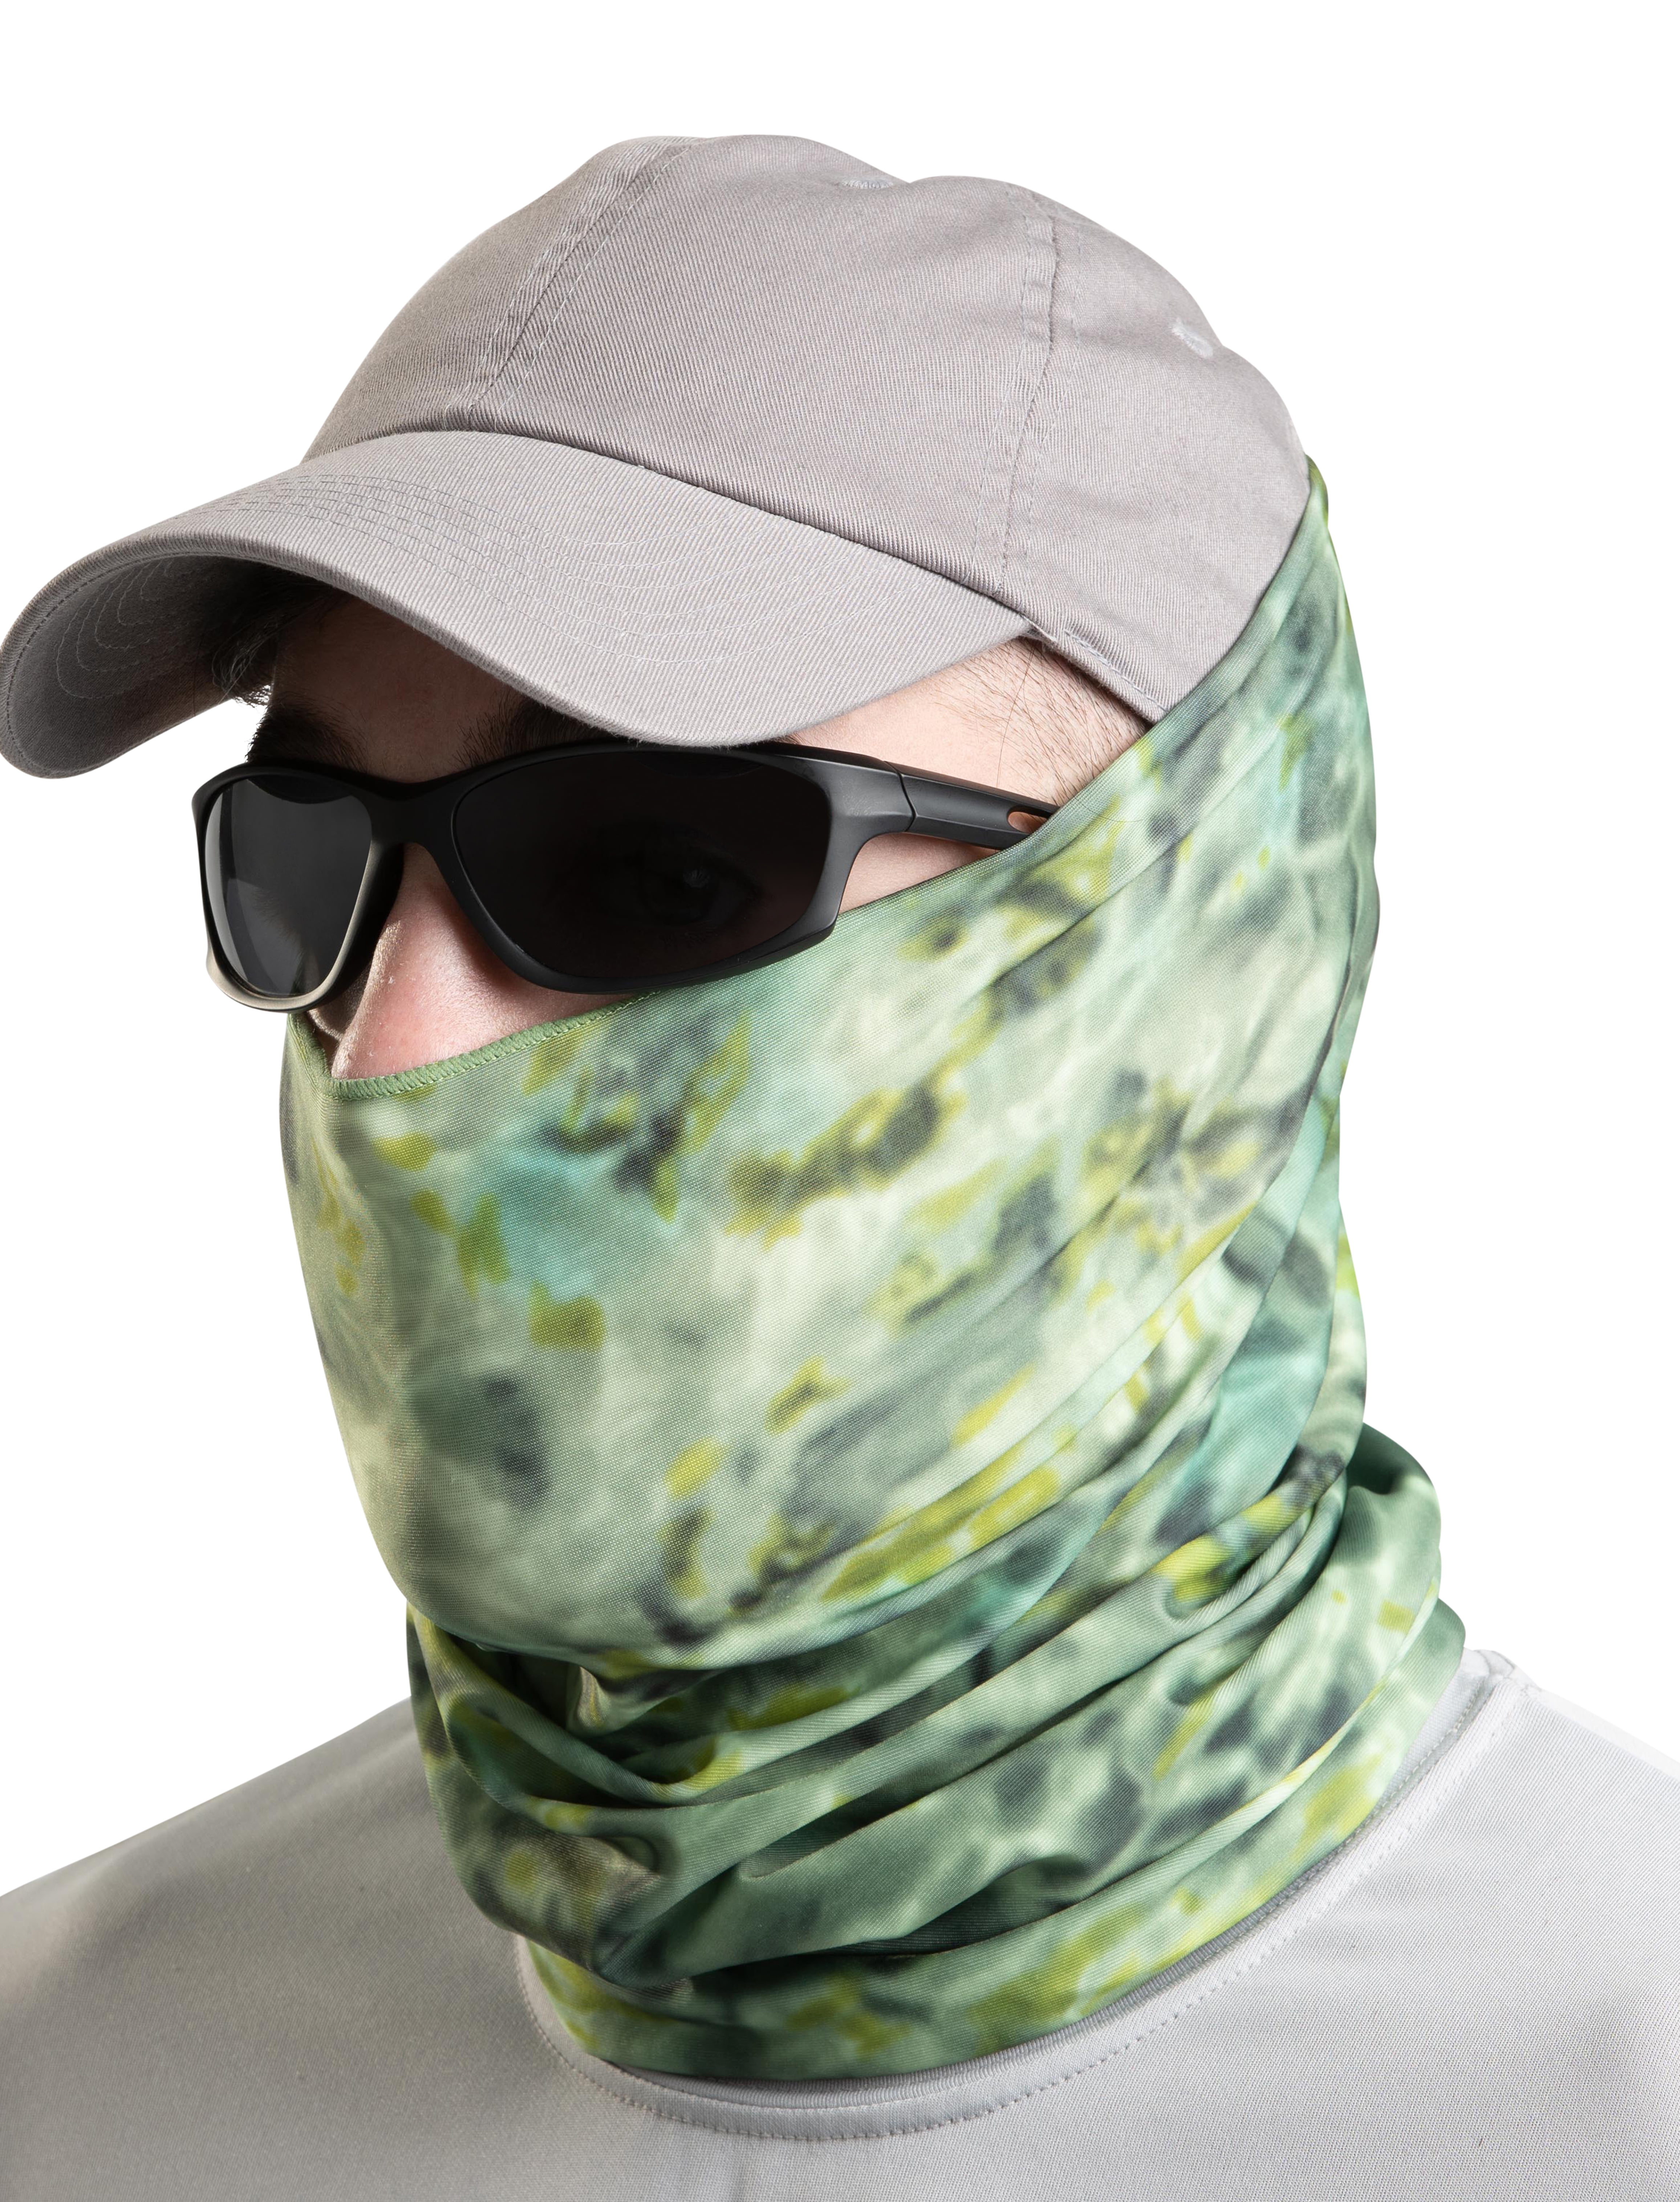 SUN GAITER Mask Bandana UPF 50 UV Protecter Face Neck Impression Sunrise Monet 